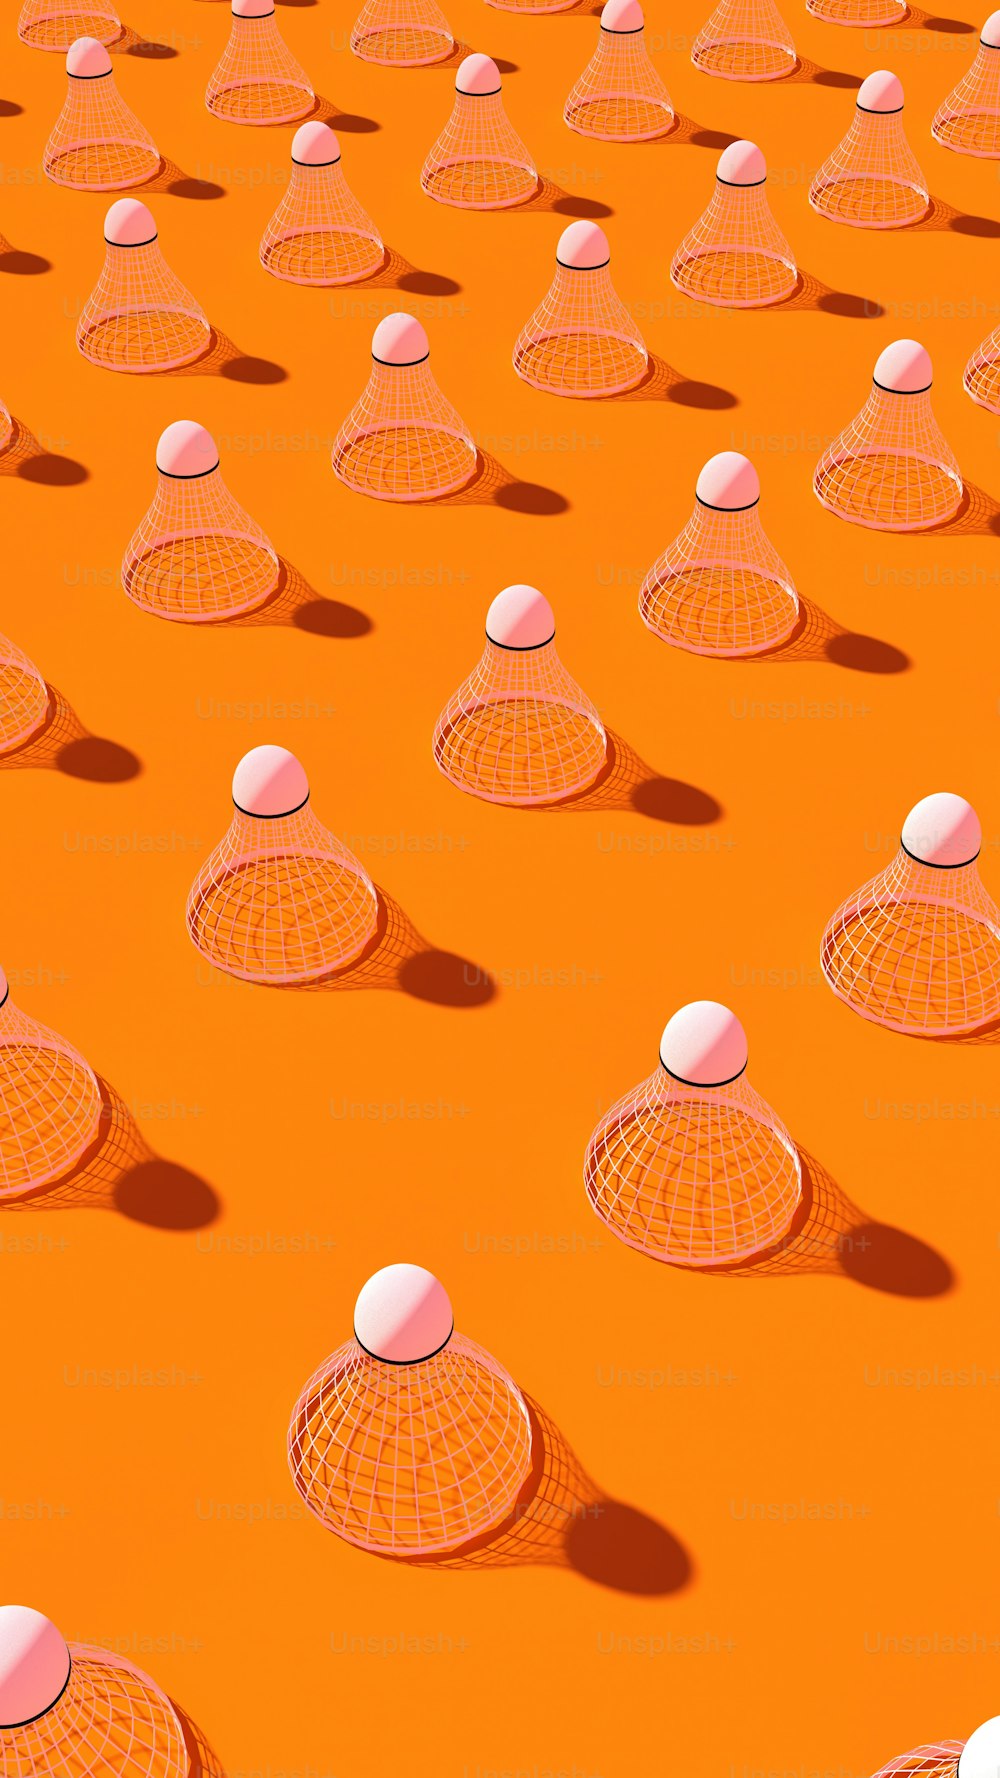 オレンジ色の表面の上に座っている白いボールのグループ